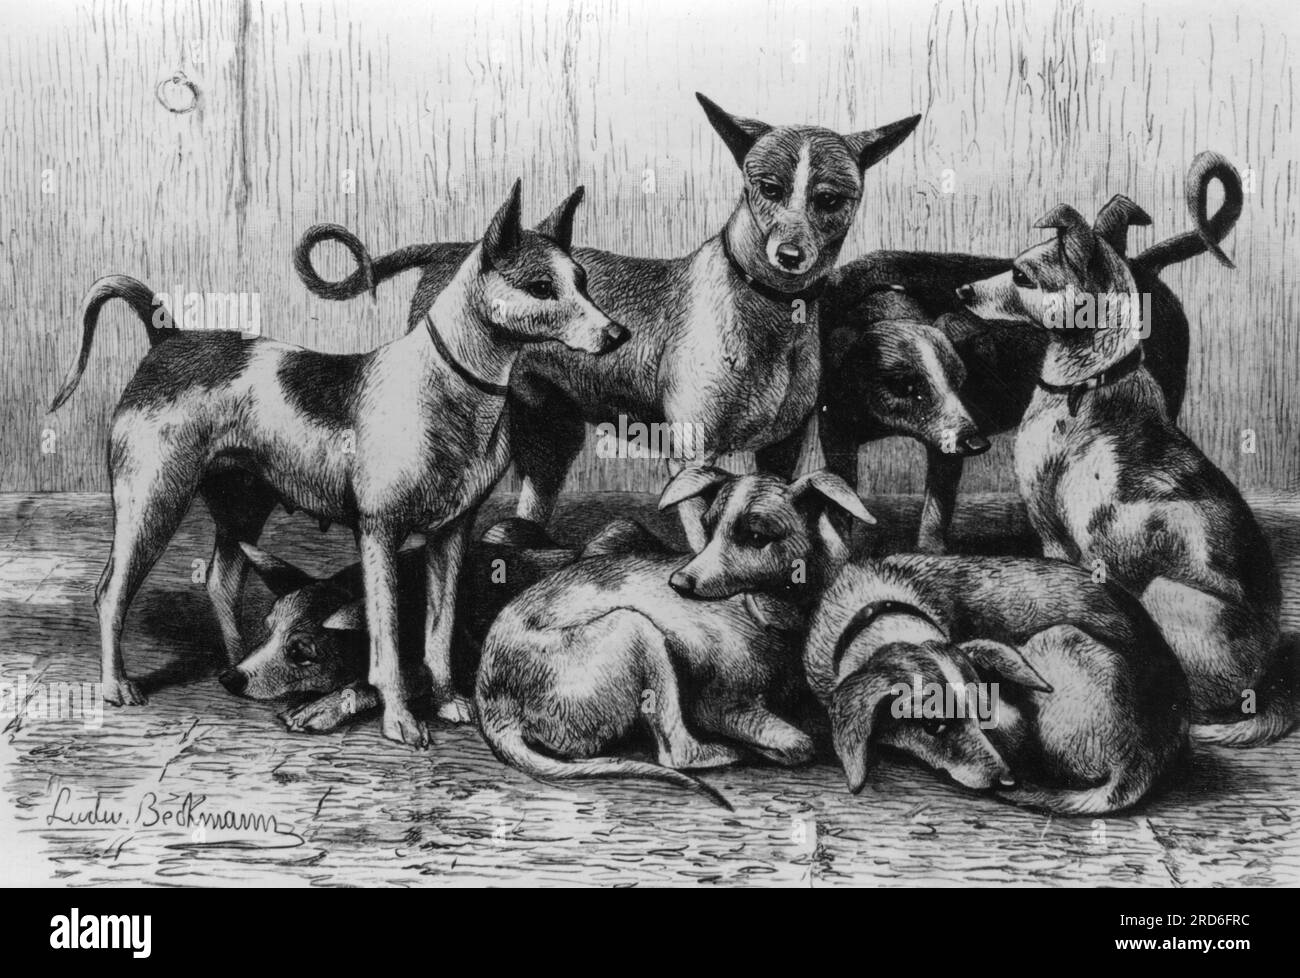 zoologie / animaux, chien, chiens d'animaux de compagnie (Canis lupis familiaris), basenji, sept chiens, INFORMATION-AUTORISATION-DROITS-SUPPLÉMENTAIRES-NON-DISPONIBLE Banque D'Images